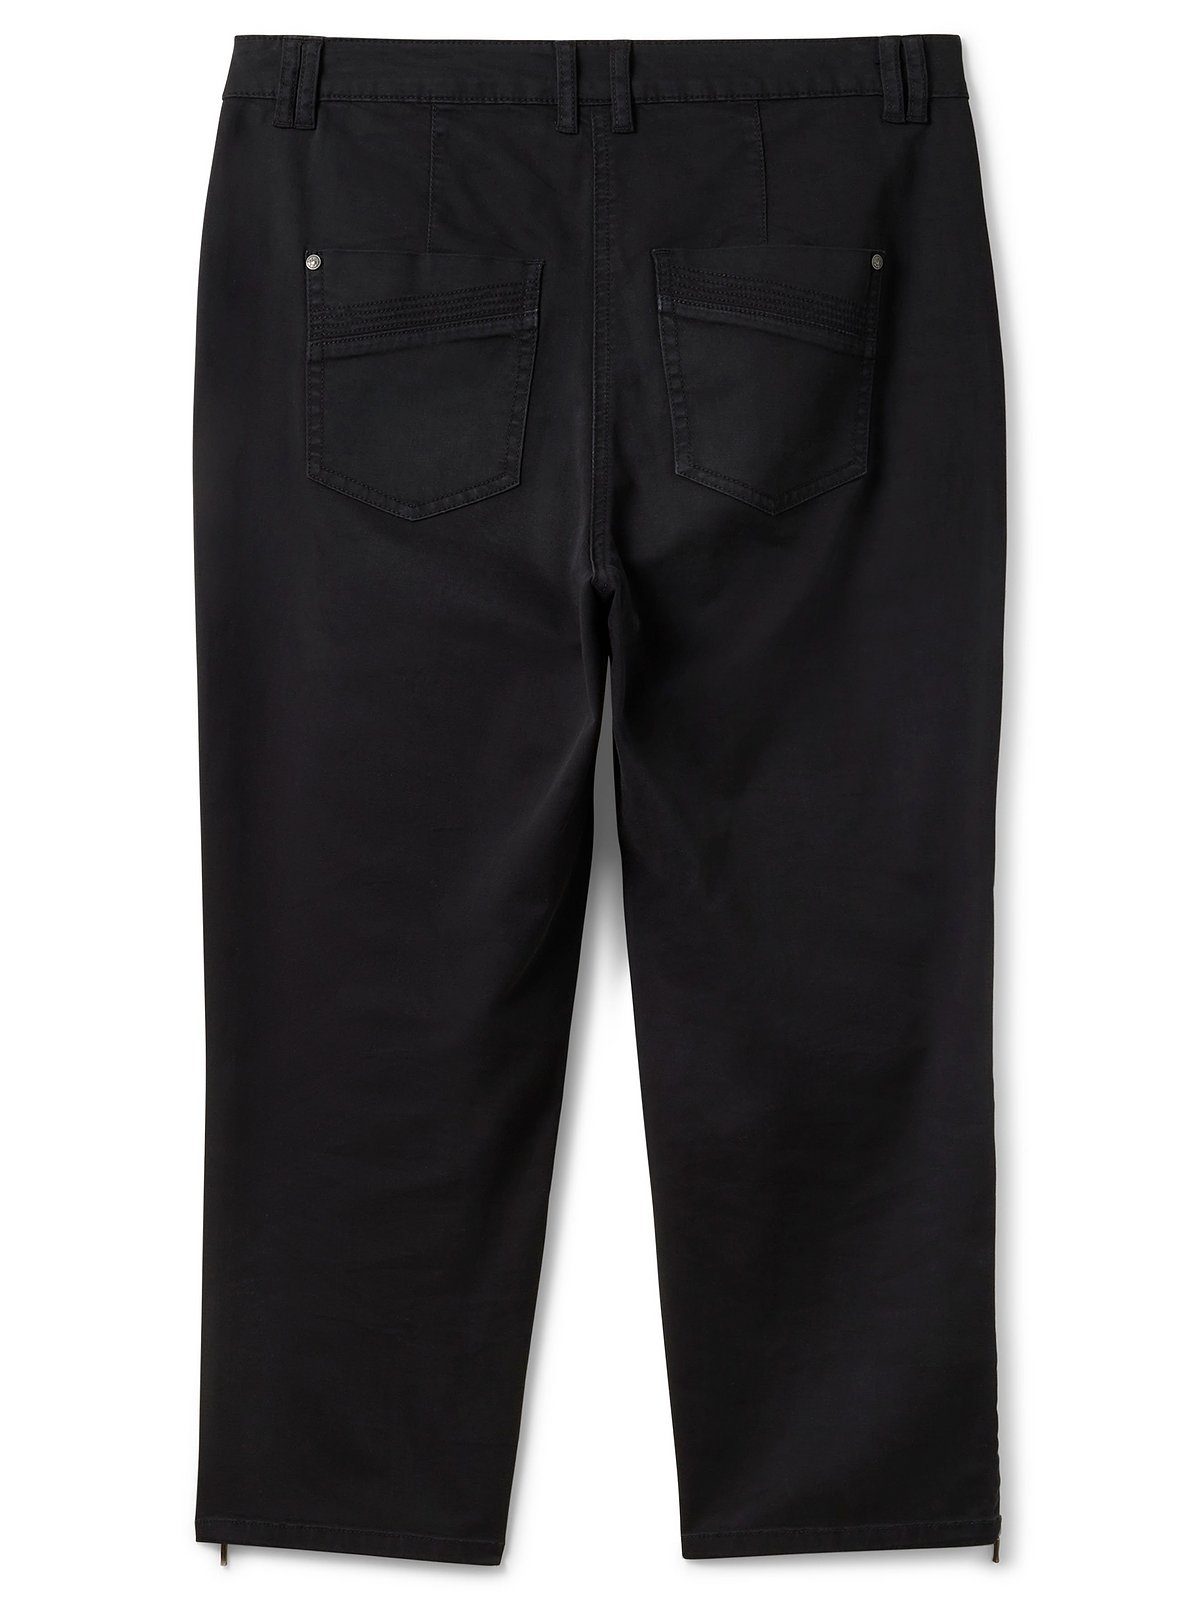 Große mit Sheego aus Baumwoll-Twill Stretch-Hose Größen schwarz Zipper-Details